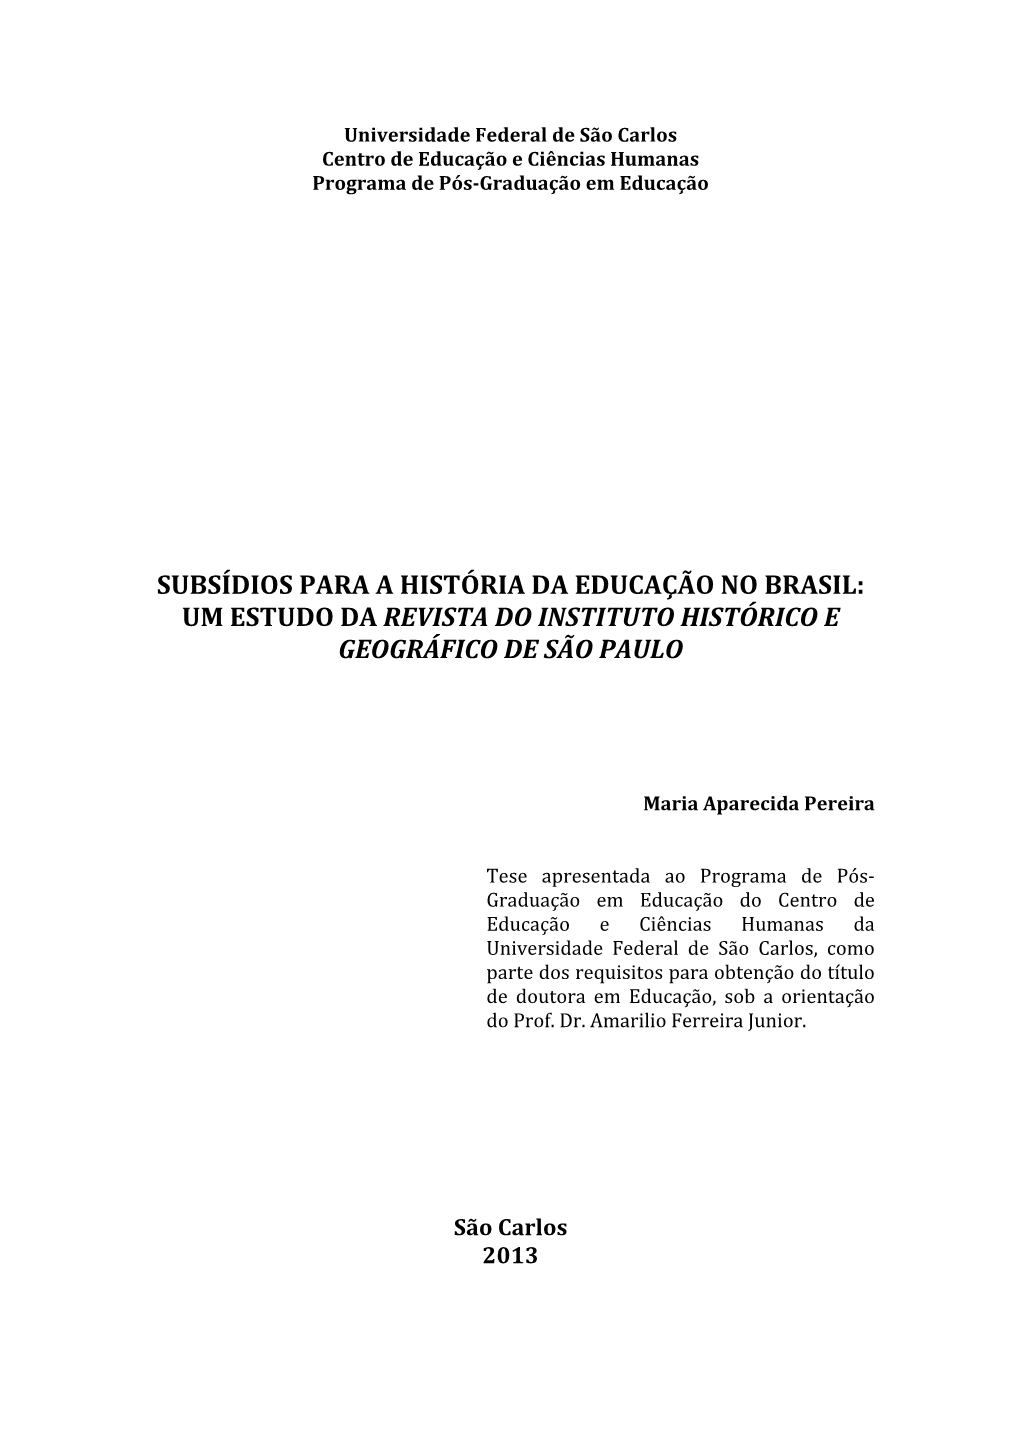 Um Estudo Da Revista Do Instituto Histórico E Geográfico De São Paulo